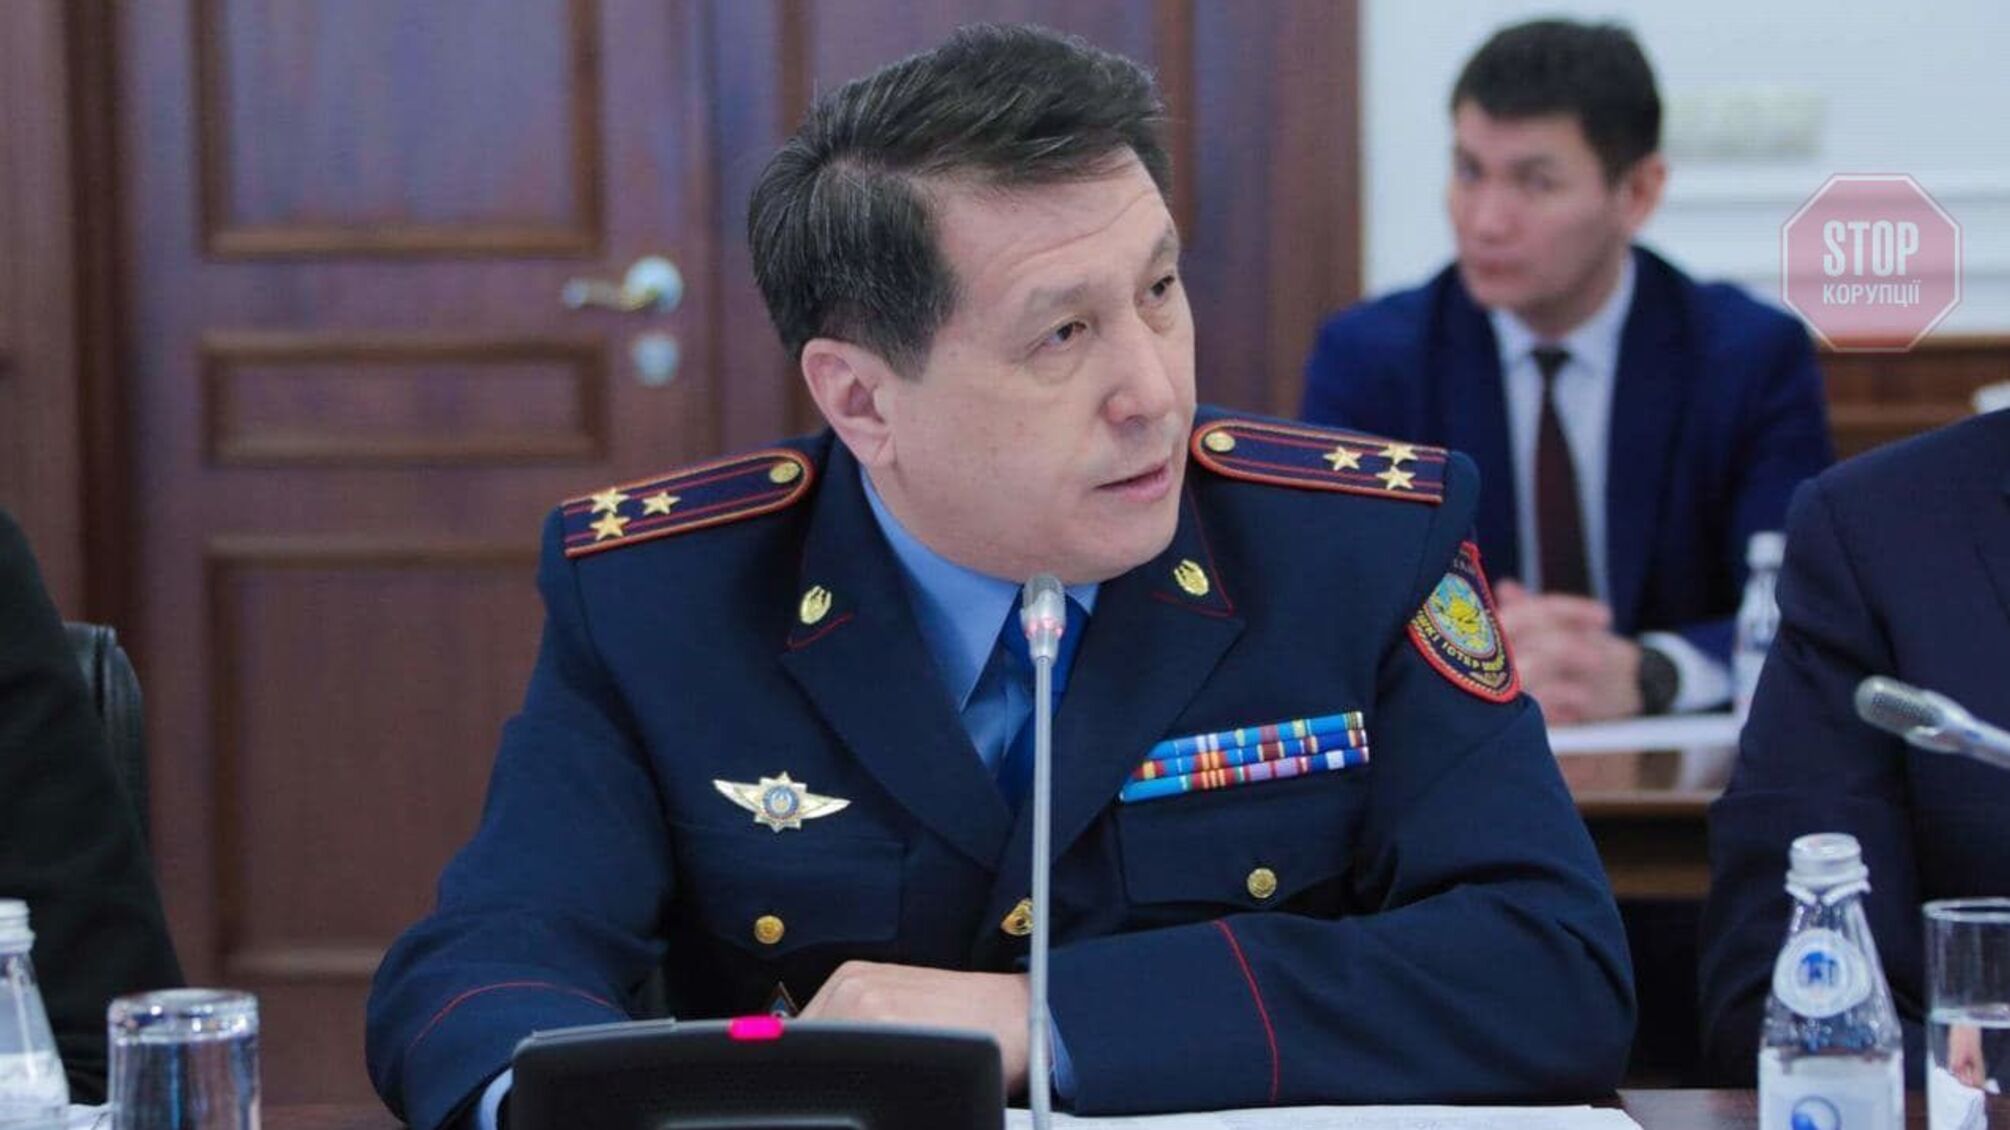 Глава полиции Казахстана на юге покончил жизнь самоубийством: журналисты предполагают, что из-за протестов